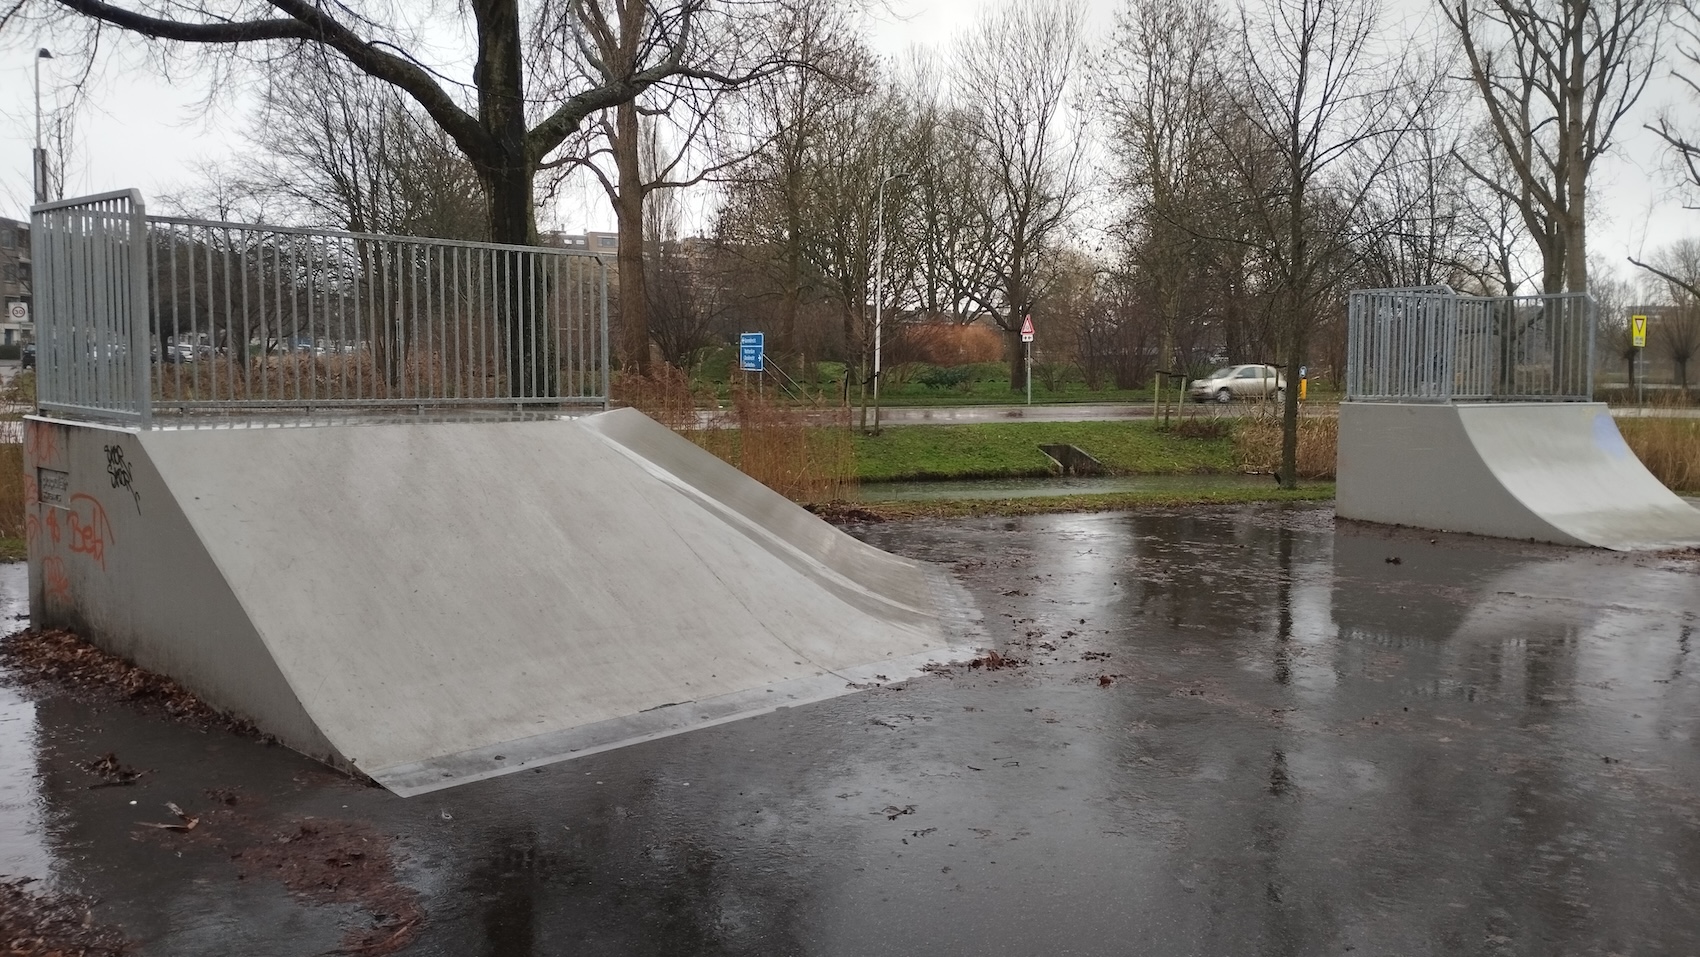 Ridderkerk Skatepark